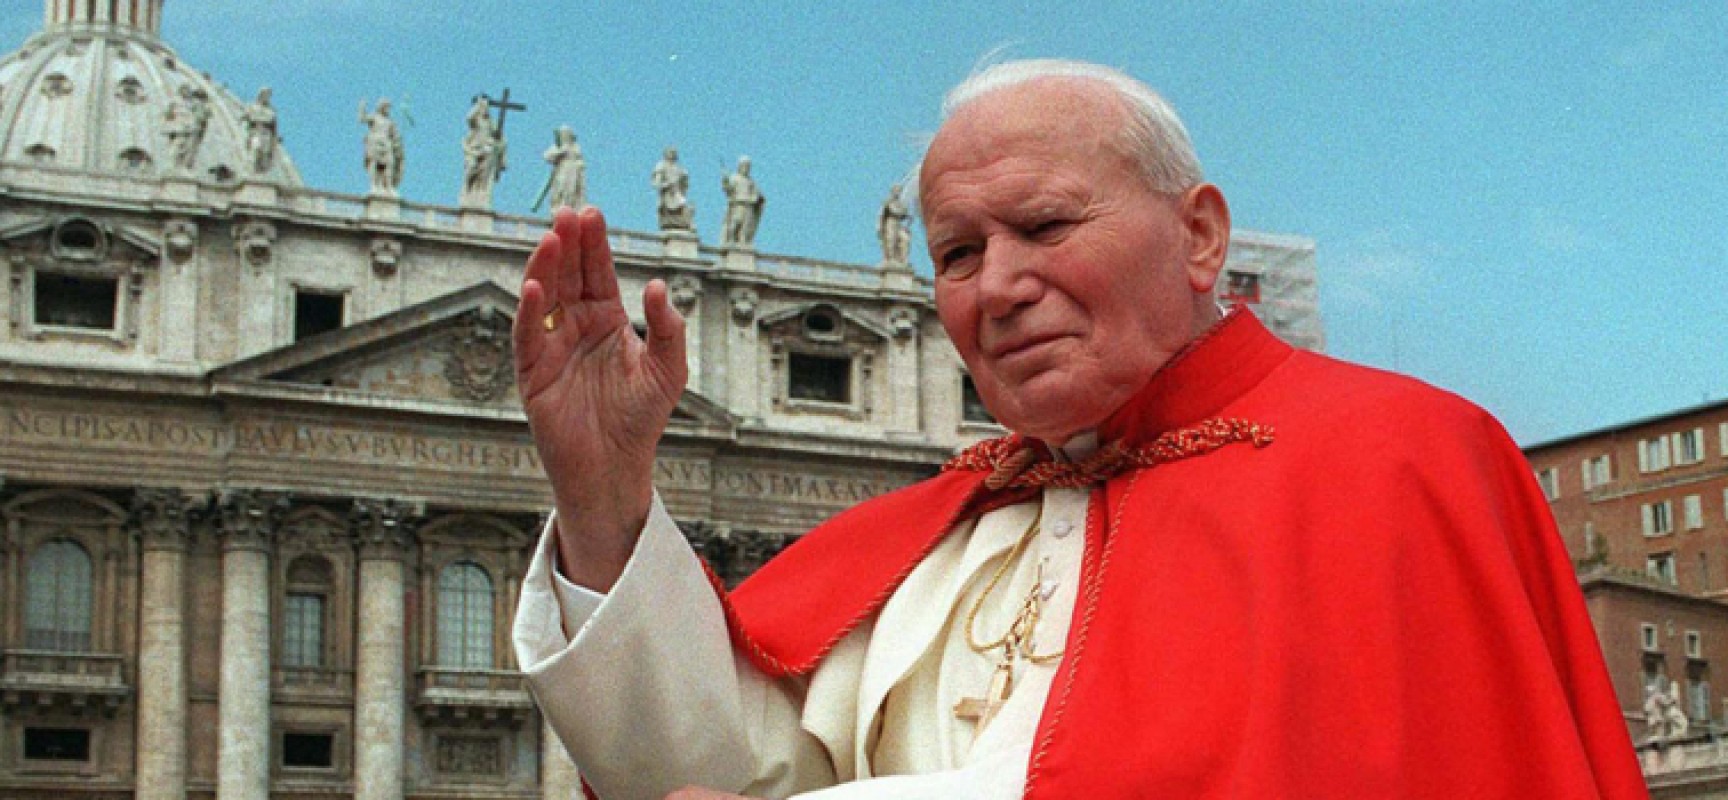 Riconoscimento Giovanni Paolo II, al via l’ottava edizione